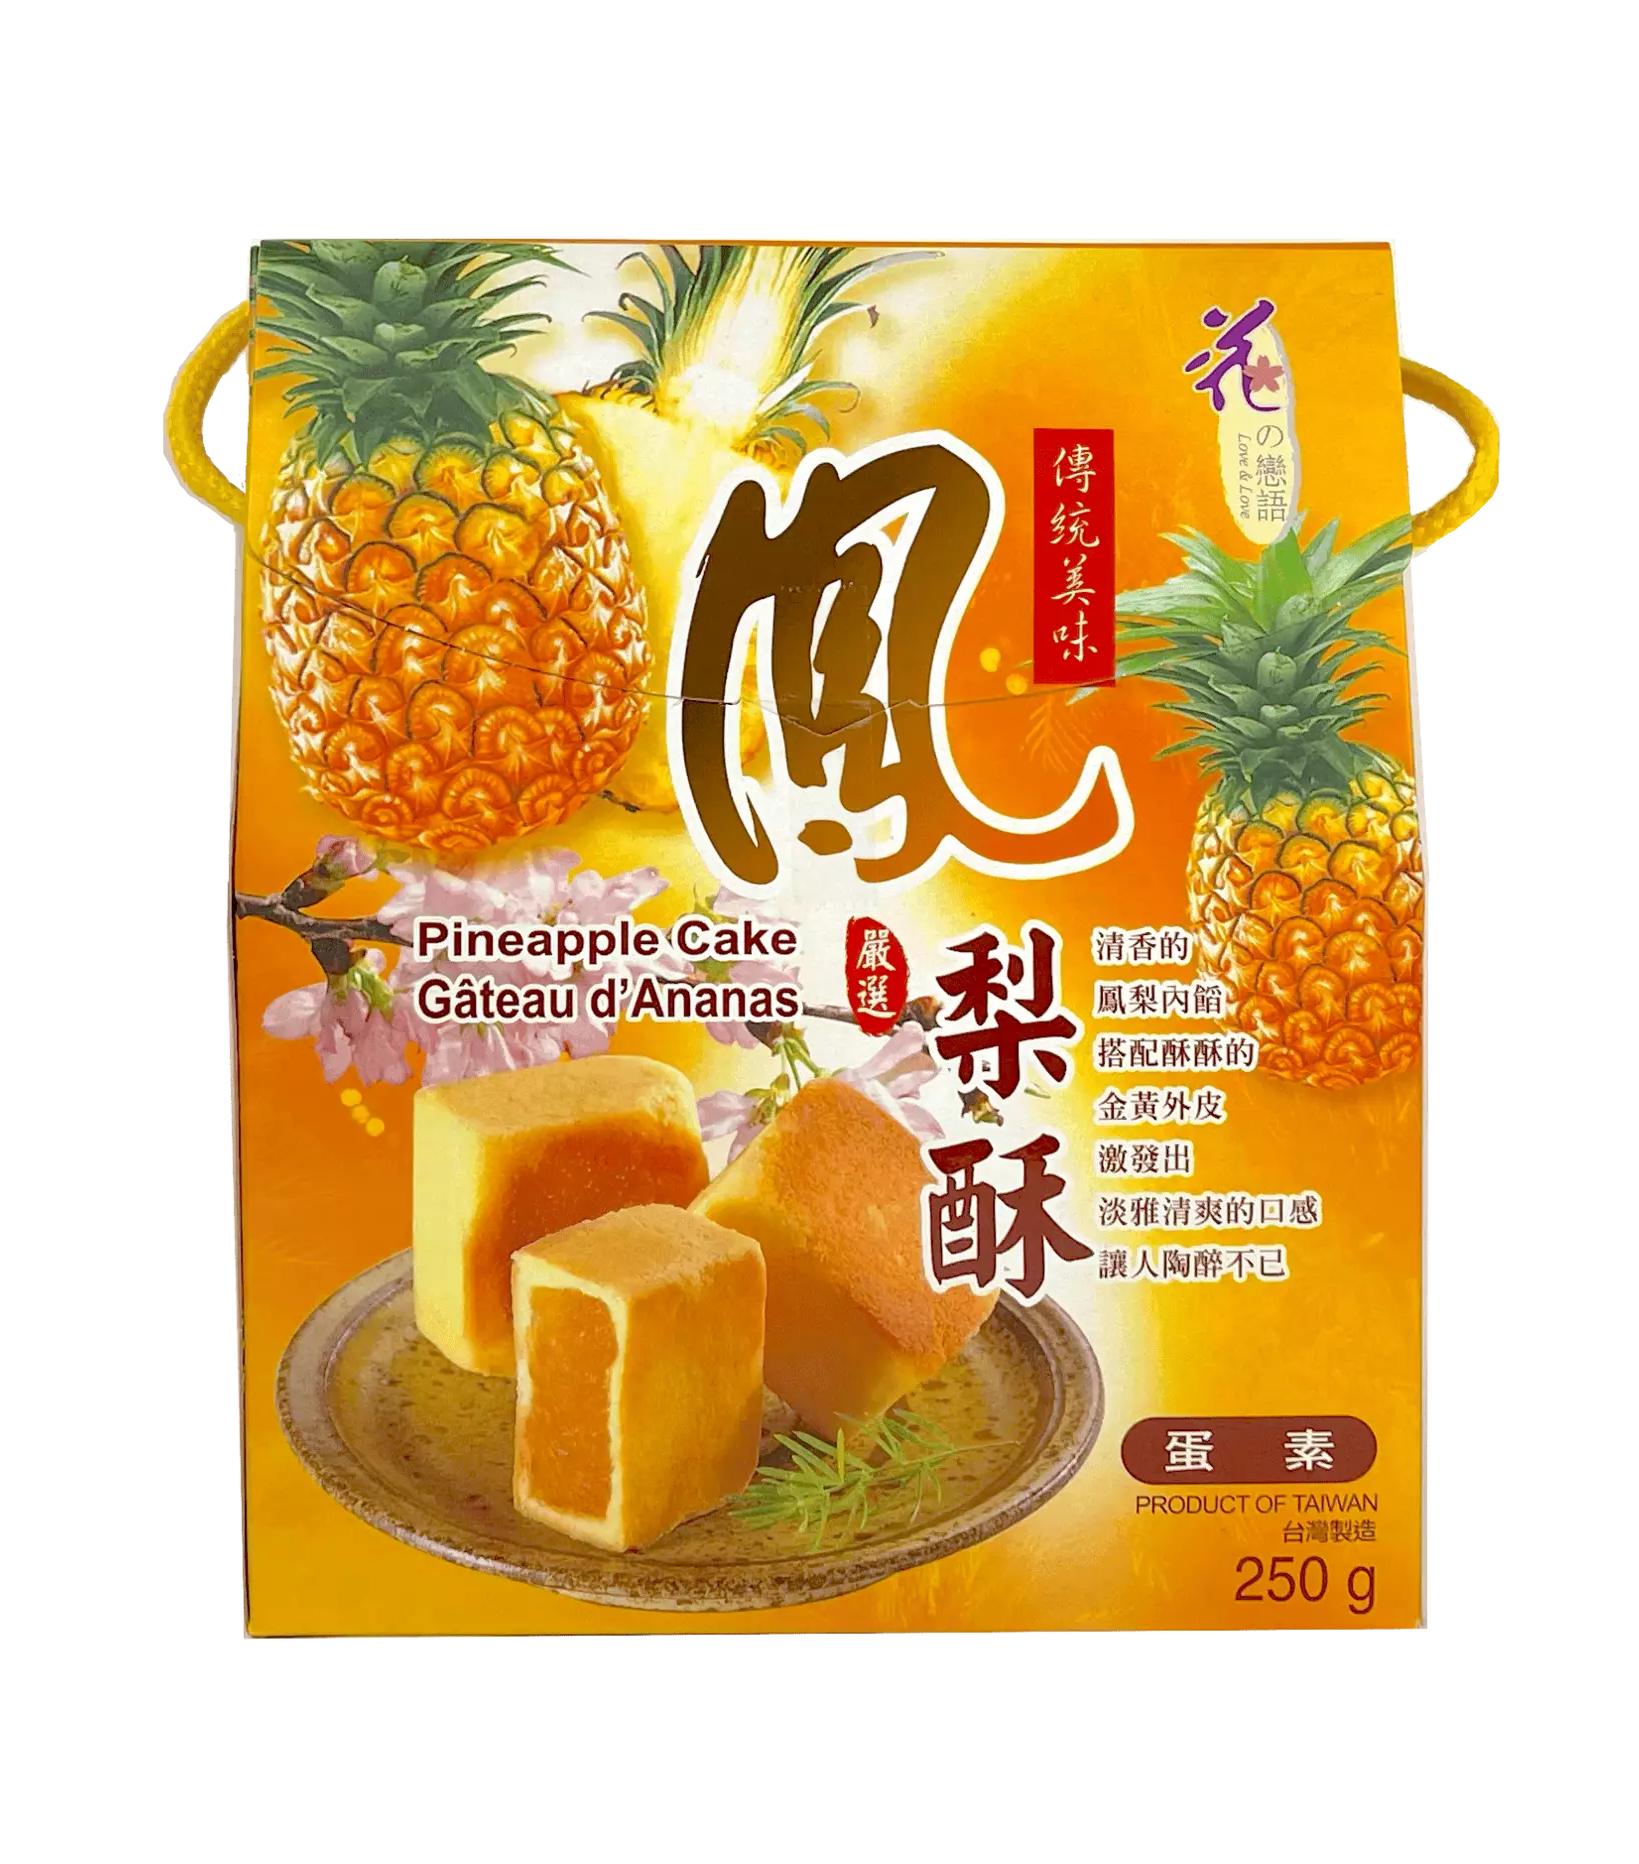 Pineapple Cake 250g Loves Flower Taiwan